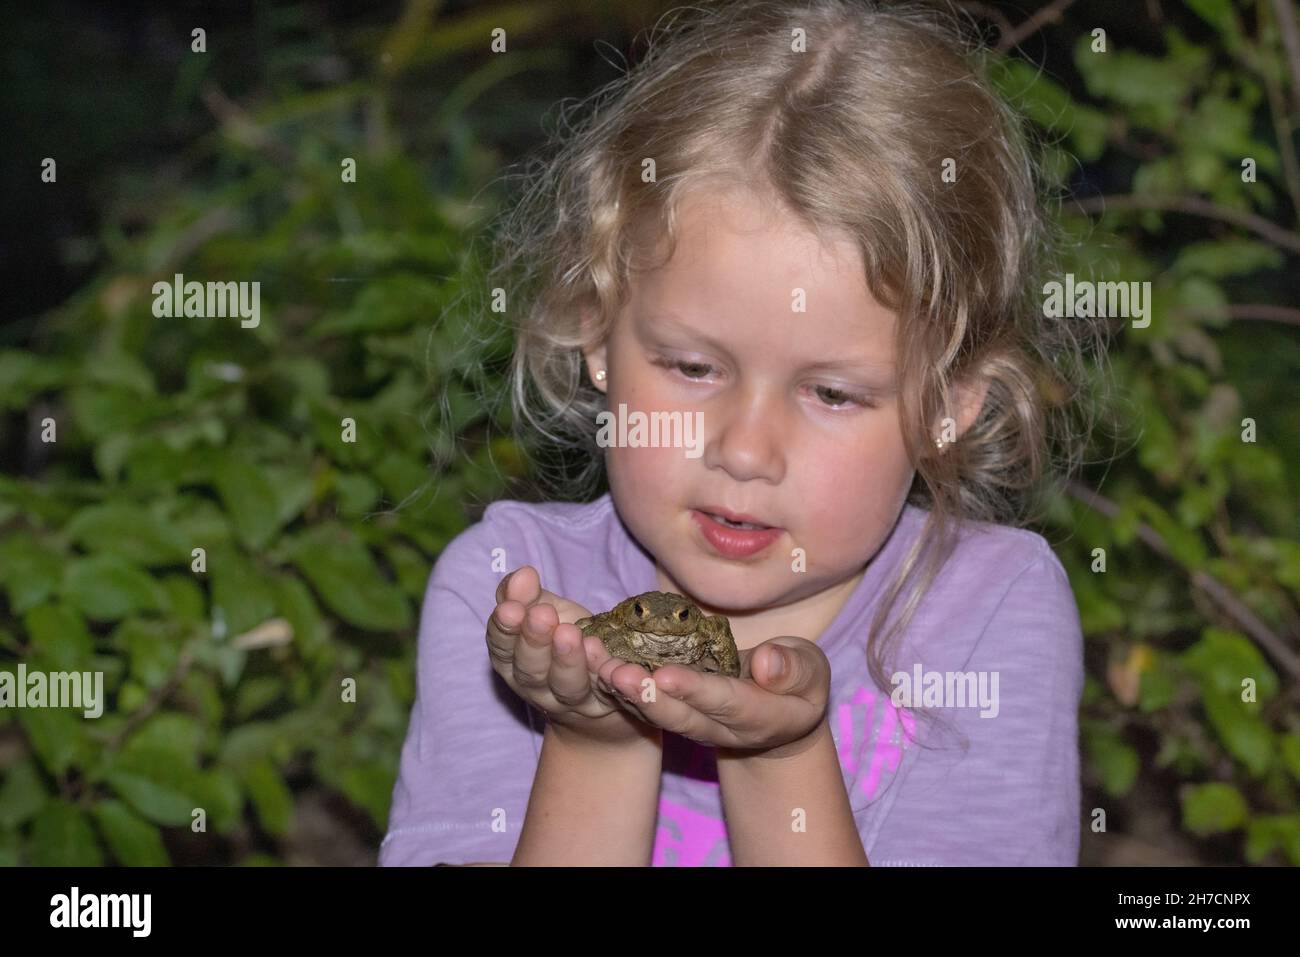 Europäische Kröte (Bufo bufo), kleines Mädchen mit Zahnlücke, das vorsichtig eine Kröte in den Händen hält, Deutschland Stockfoto